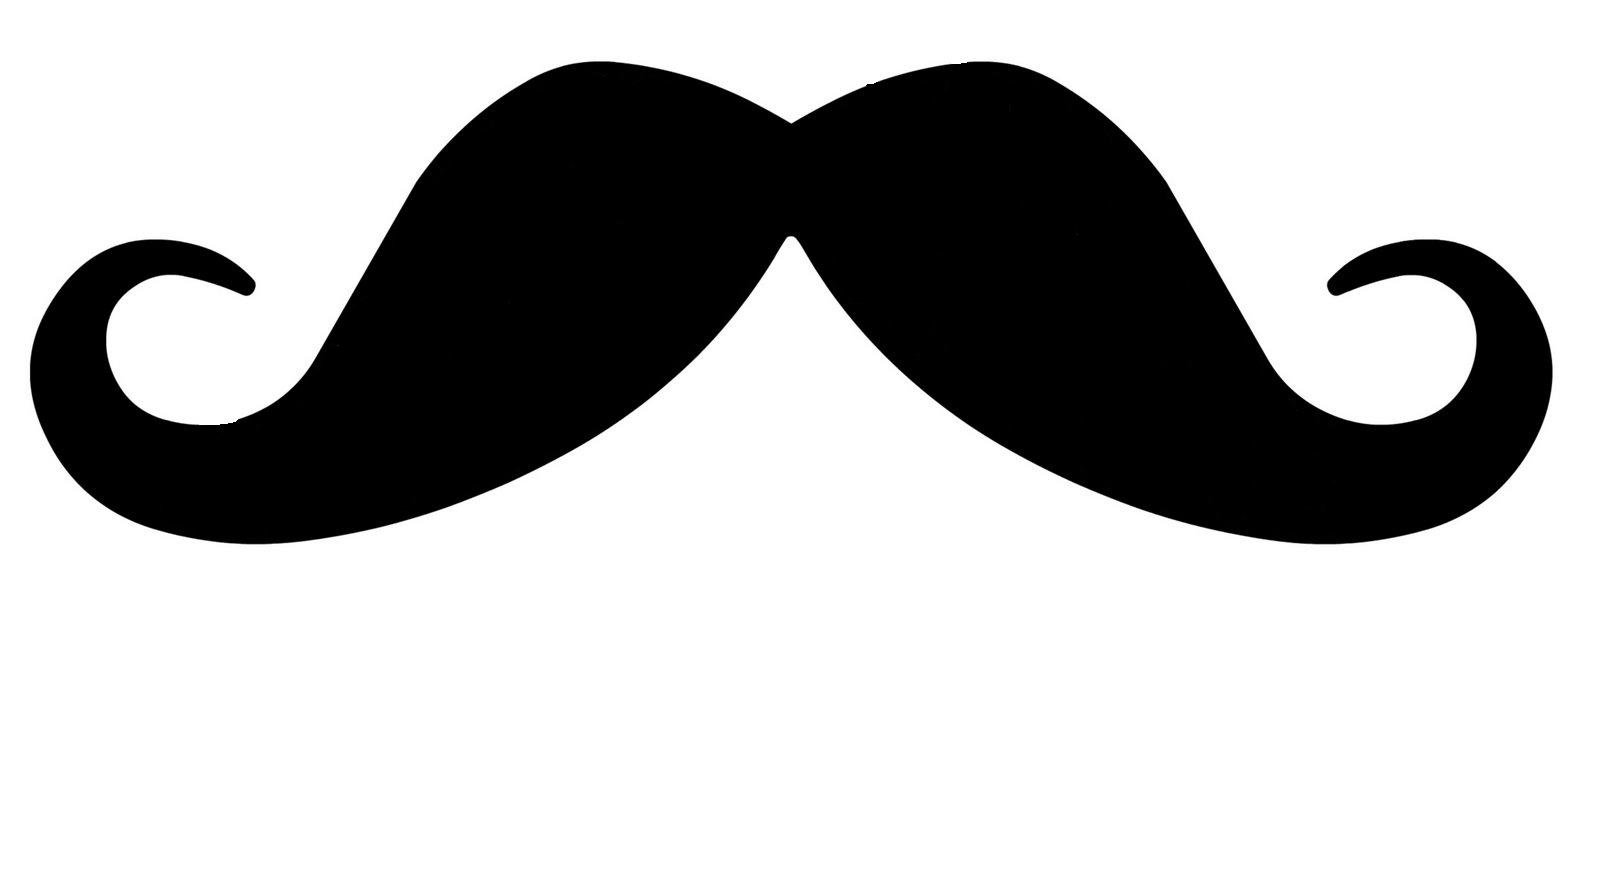 Cartoon mustache clipart